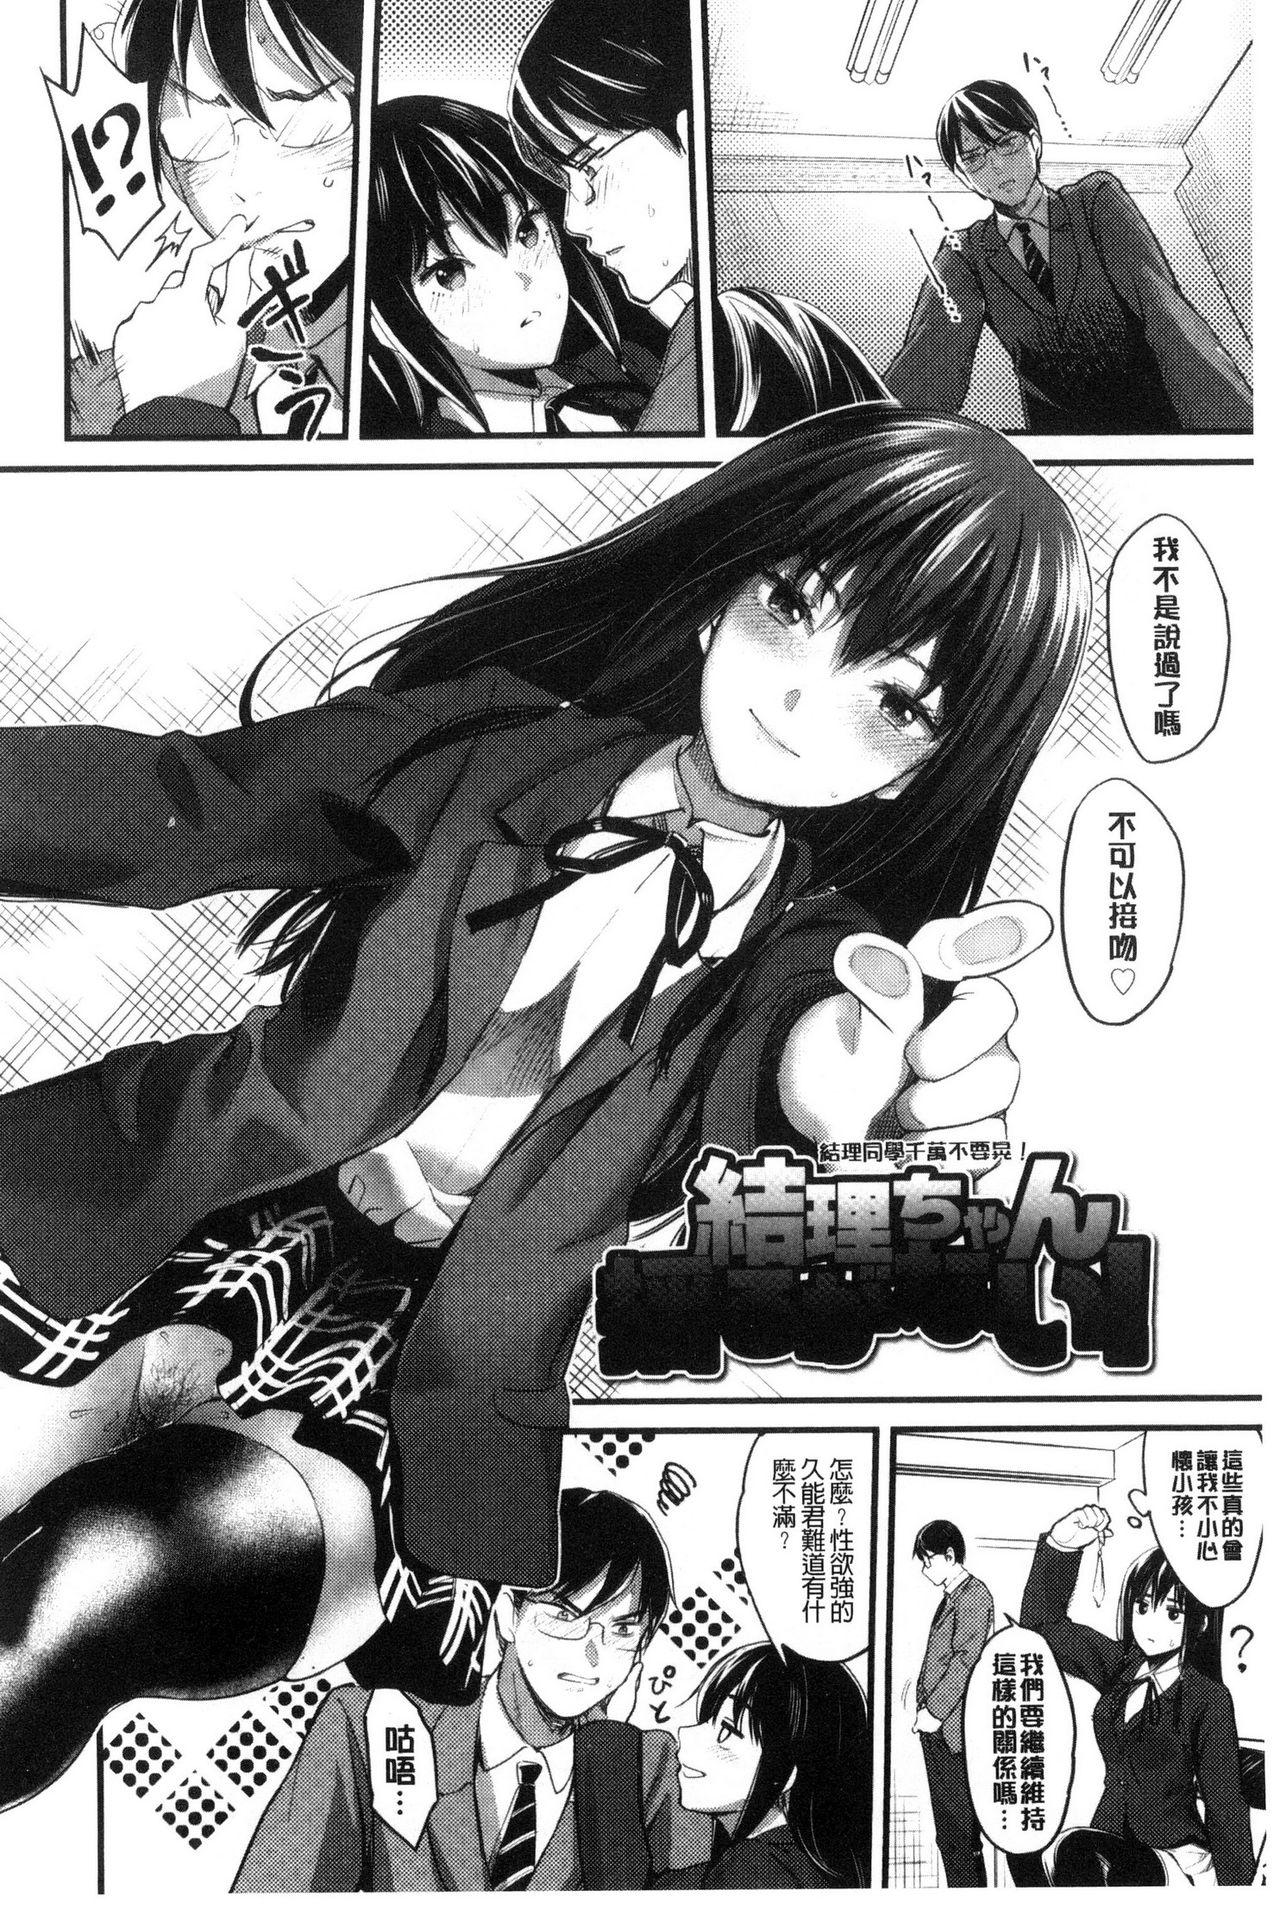 Seifuku no Mama Aishinasai! - Love in school uniform 43